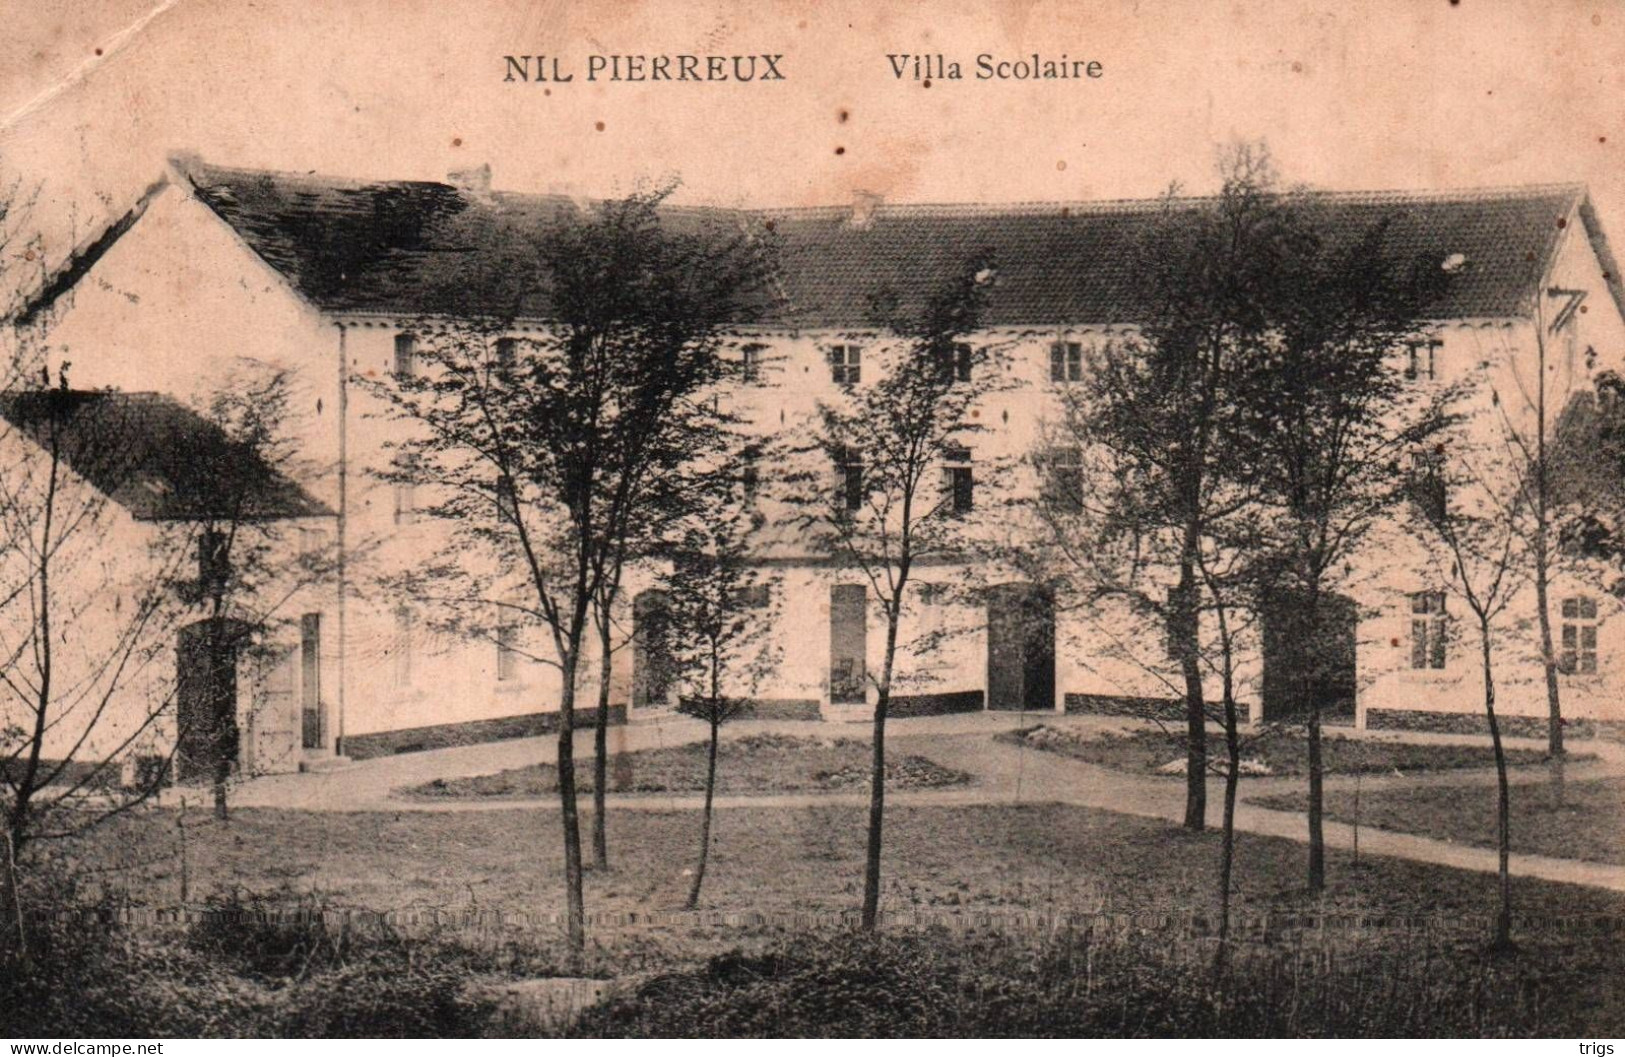 Nil Pierreux - Villa Scolaire - Walhain